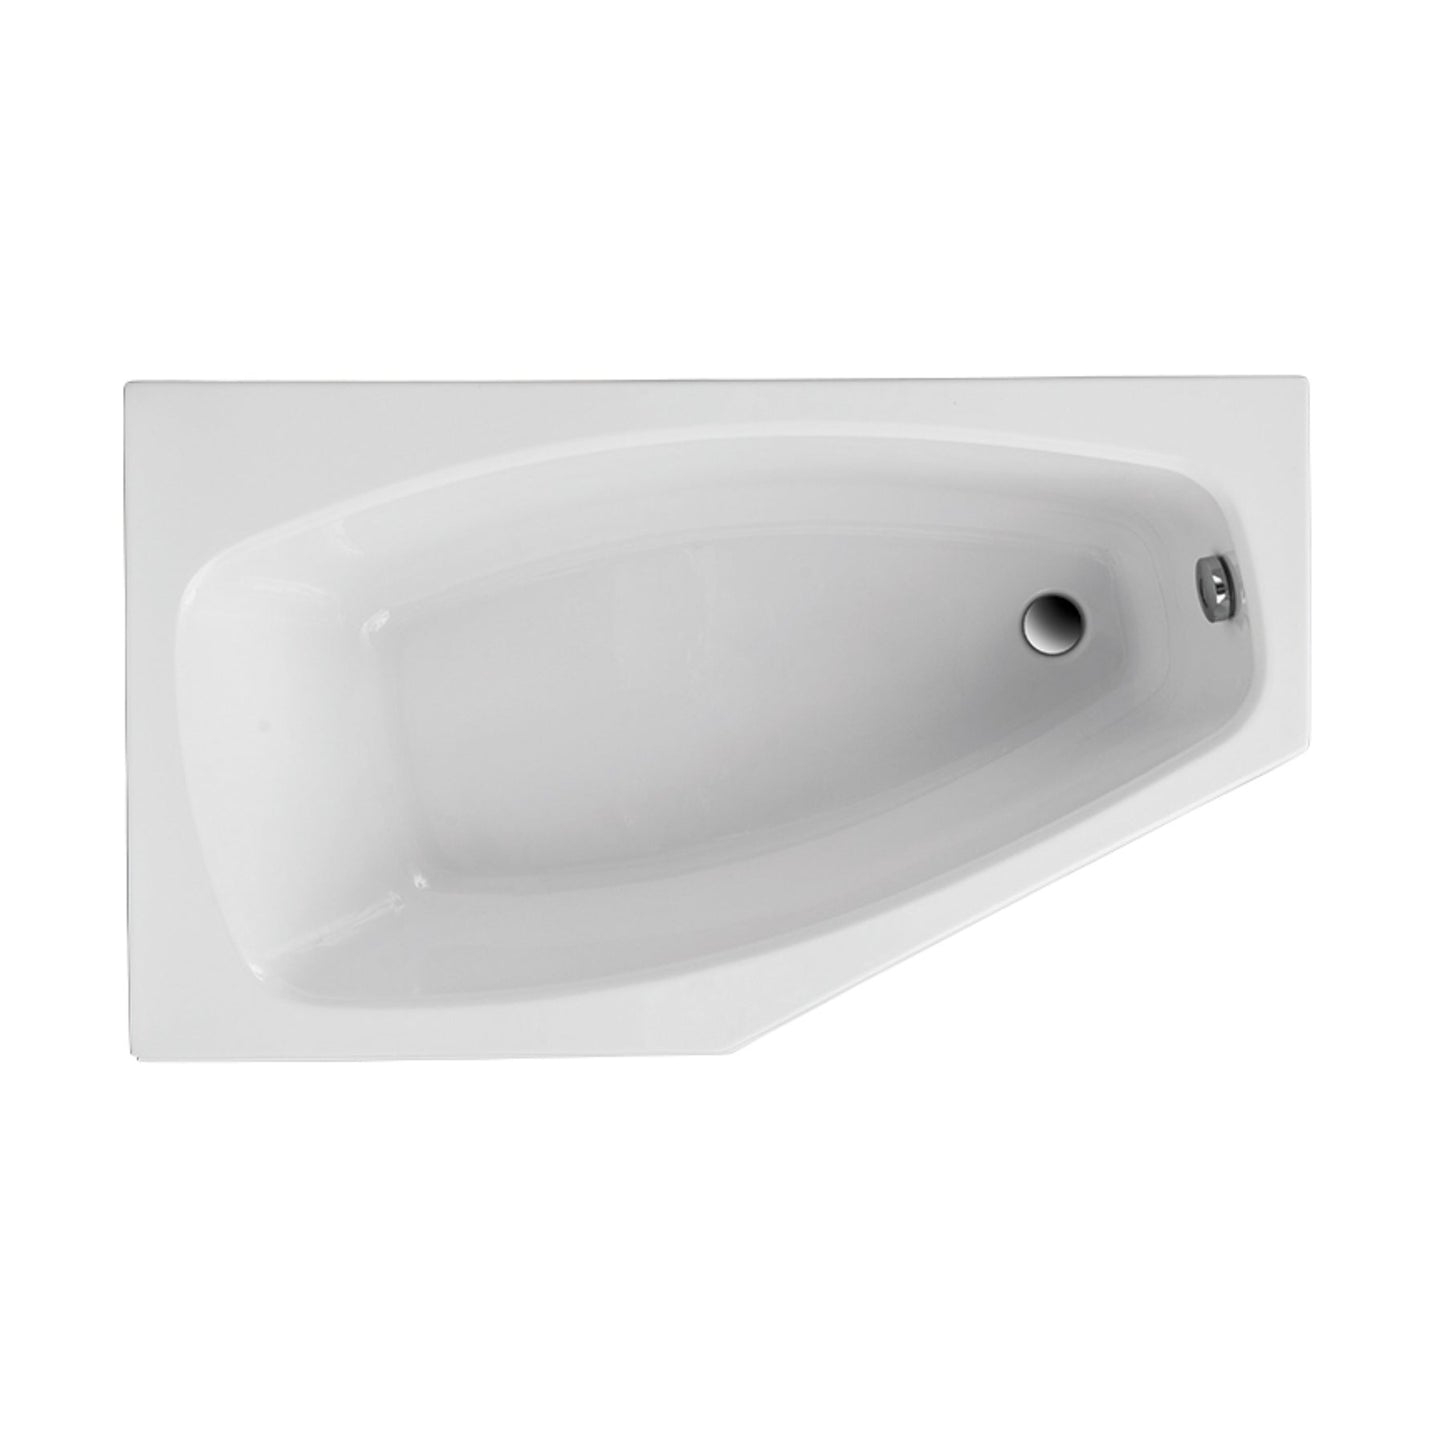 Load image into Gallery viewer, Acrylic asymmetrical corner bathtub MARIKA 140 x 80 cm
